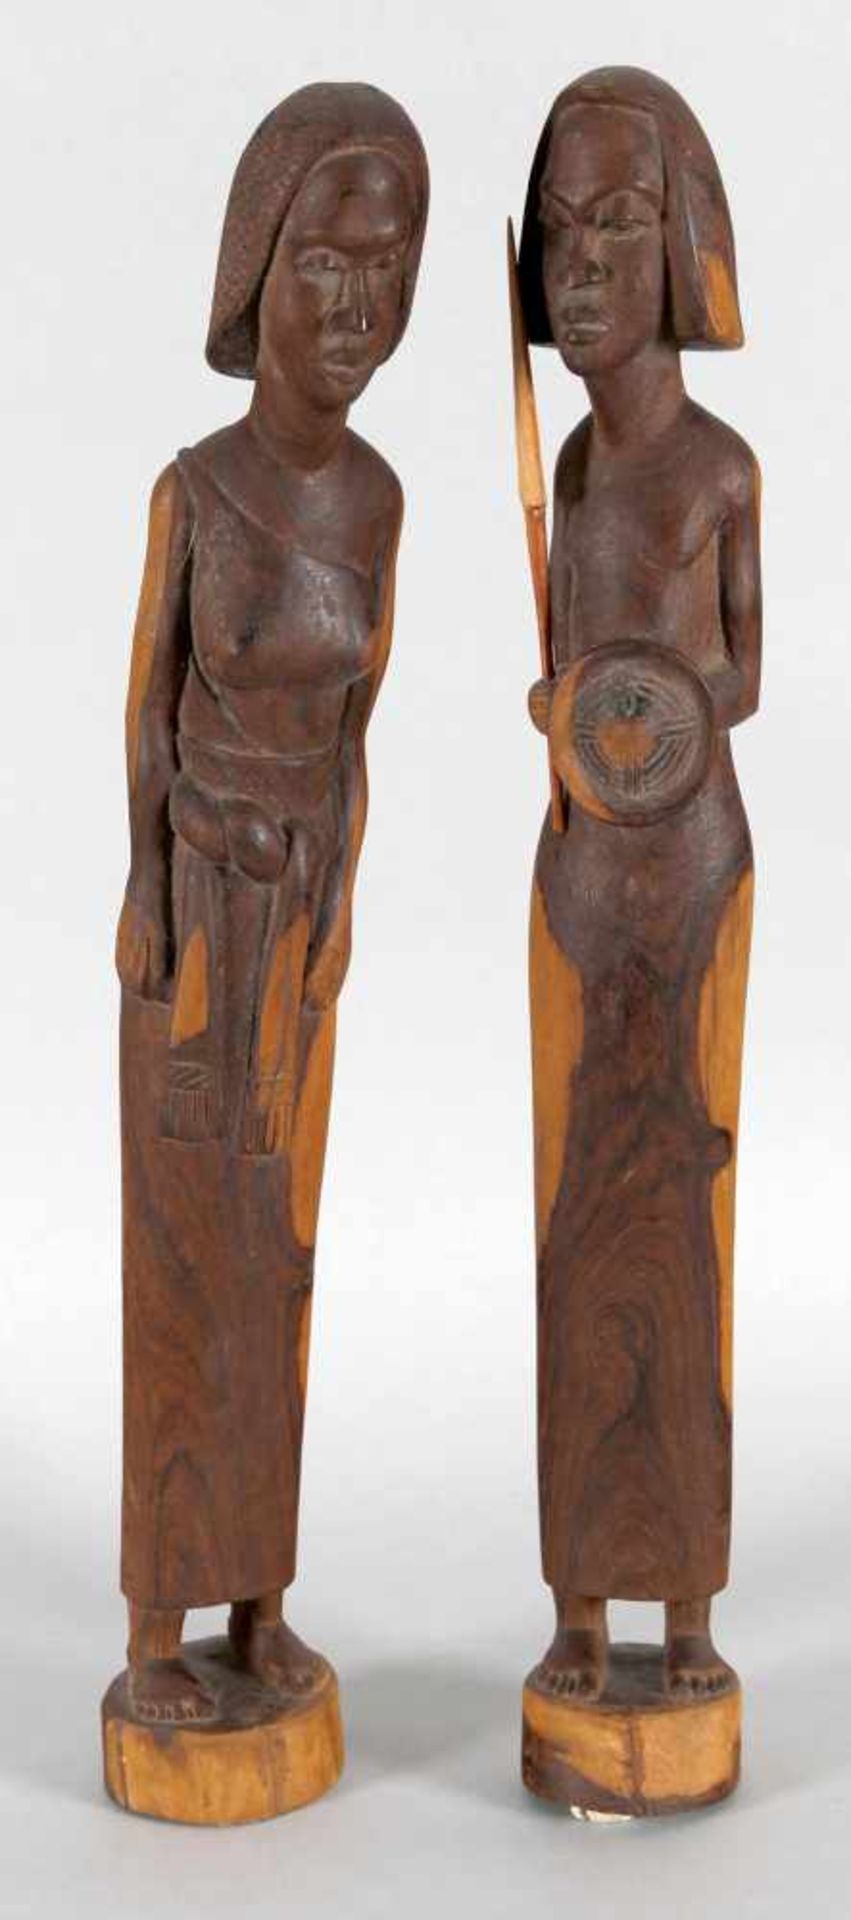 Figurenpaar Mann und Frau aus exotischem zweifarbigem Holz, Afrika, wohl 2. H. 20. Jh.der Mann mit